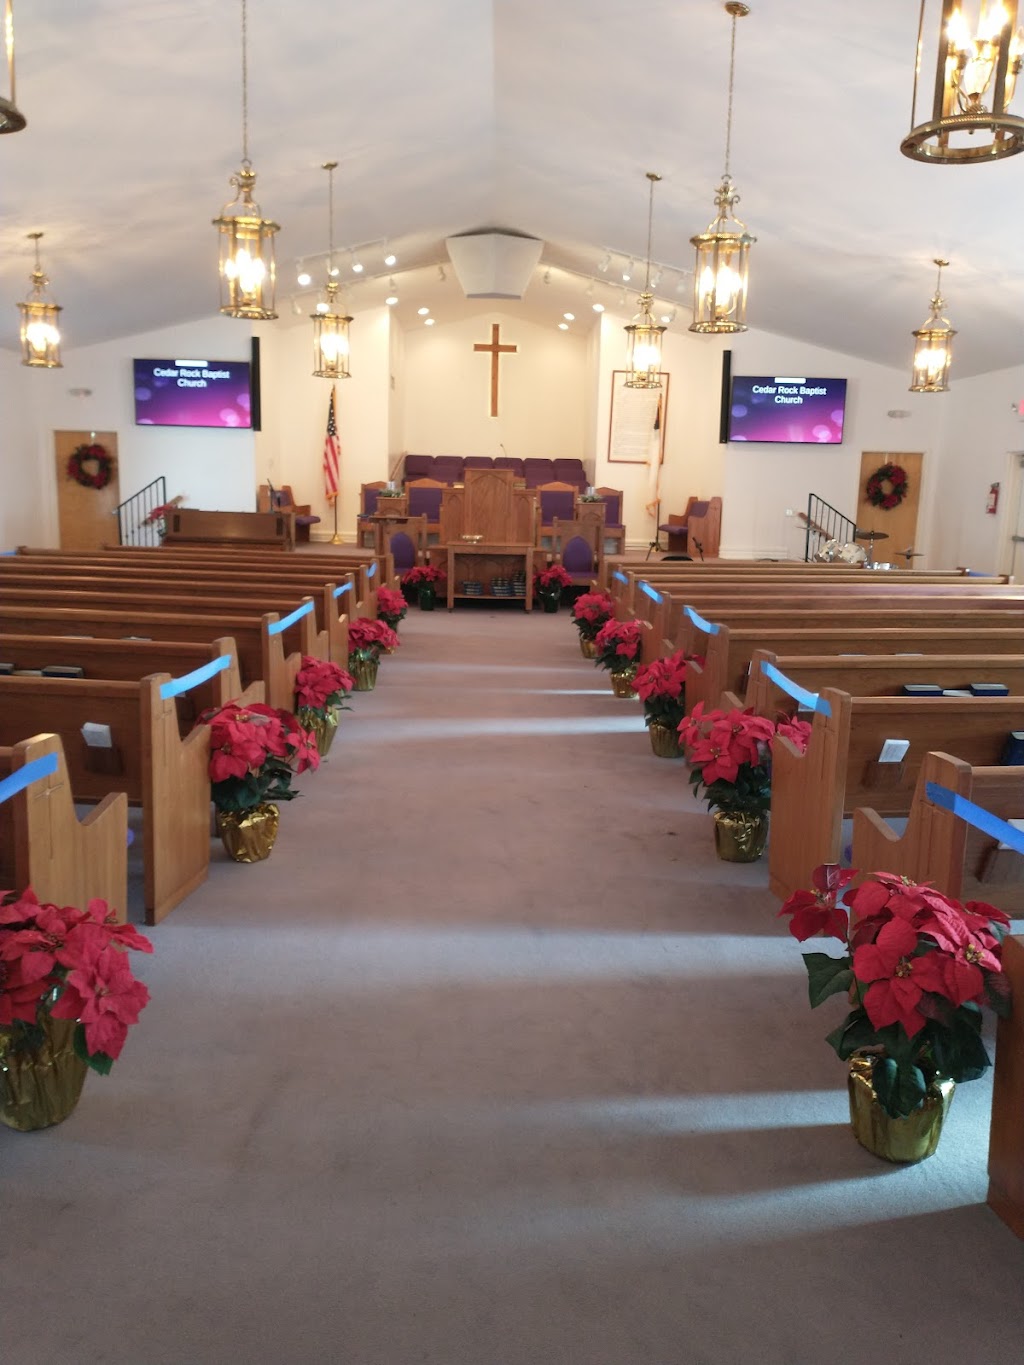 Cedar Rock Baptist Church | North Carolina 27549, USA | Phone: (919) 853-3641